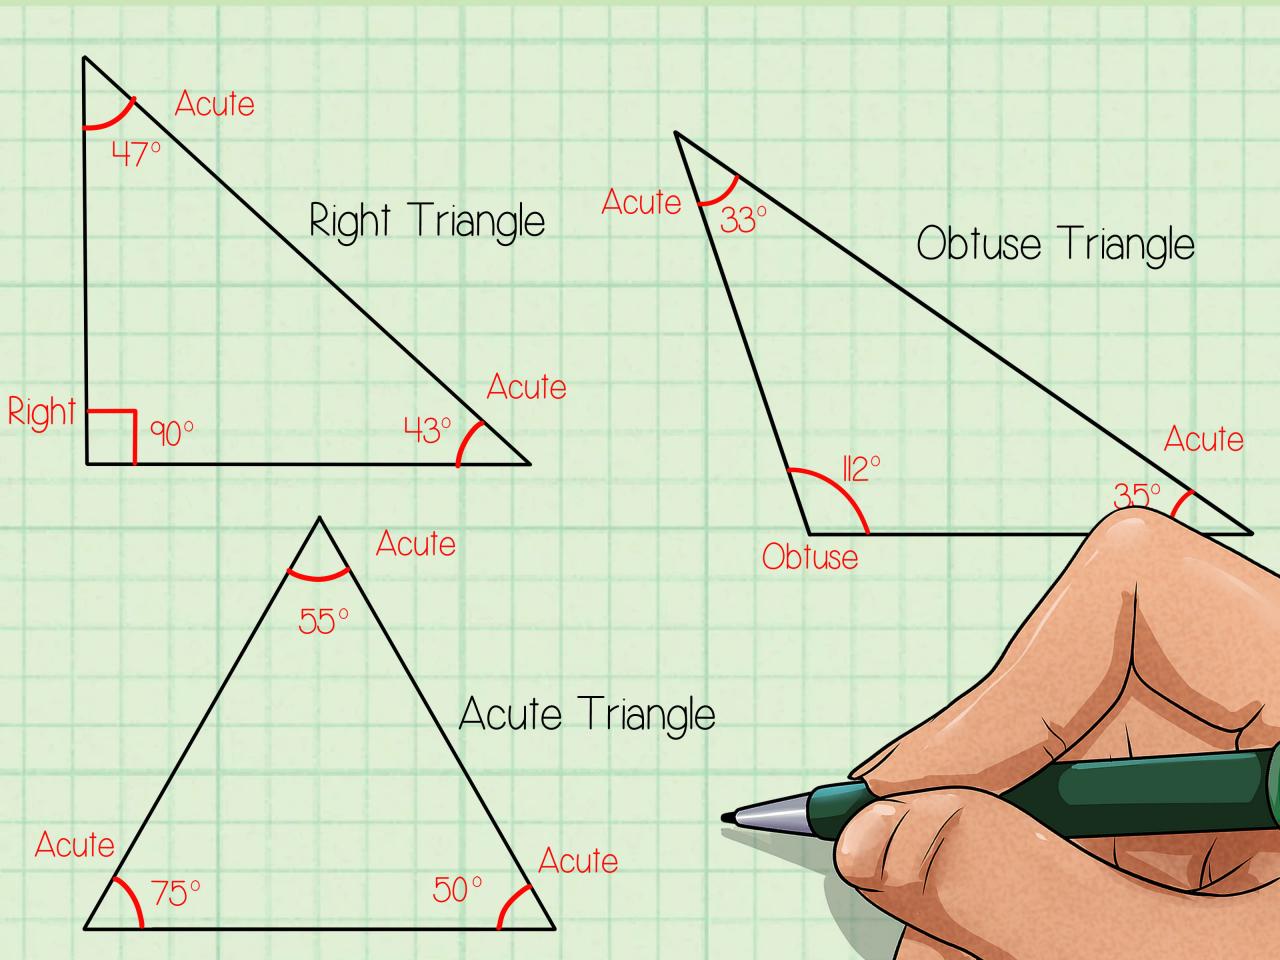 تصف نظرية فيثا غورس العلاقة بين طولي الساقين والوتر في المثلث المنفرج الزاوية.